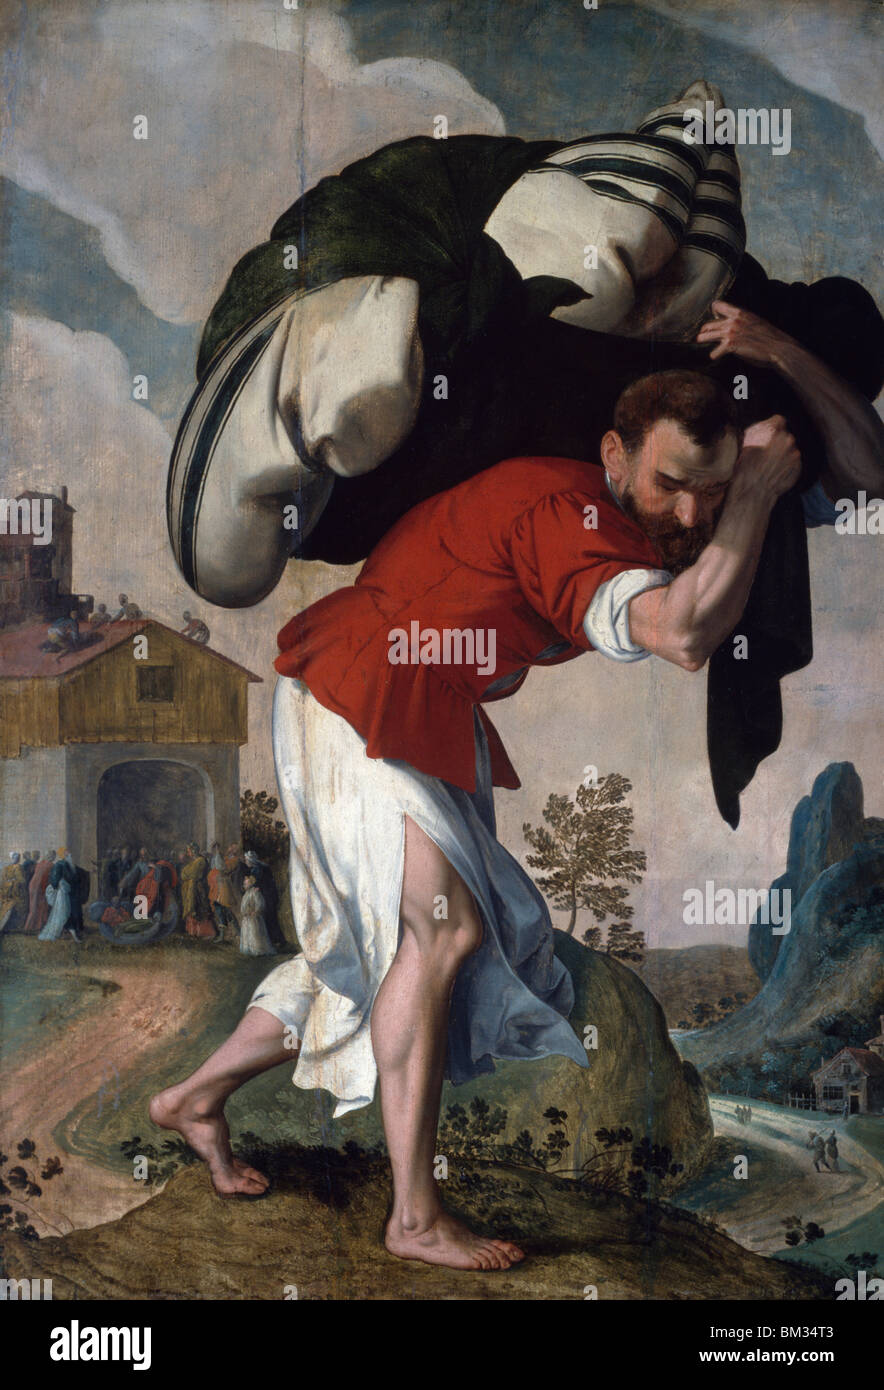 La guérison du paralytique, artiste inconnu, huile sur panneau de bois, (1560-1590), aux États-Unis d'Amérique, Washington, D.C., National Gallery of Art Banque D'Images